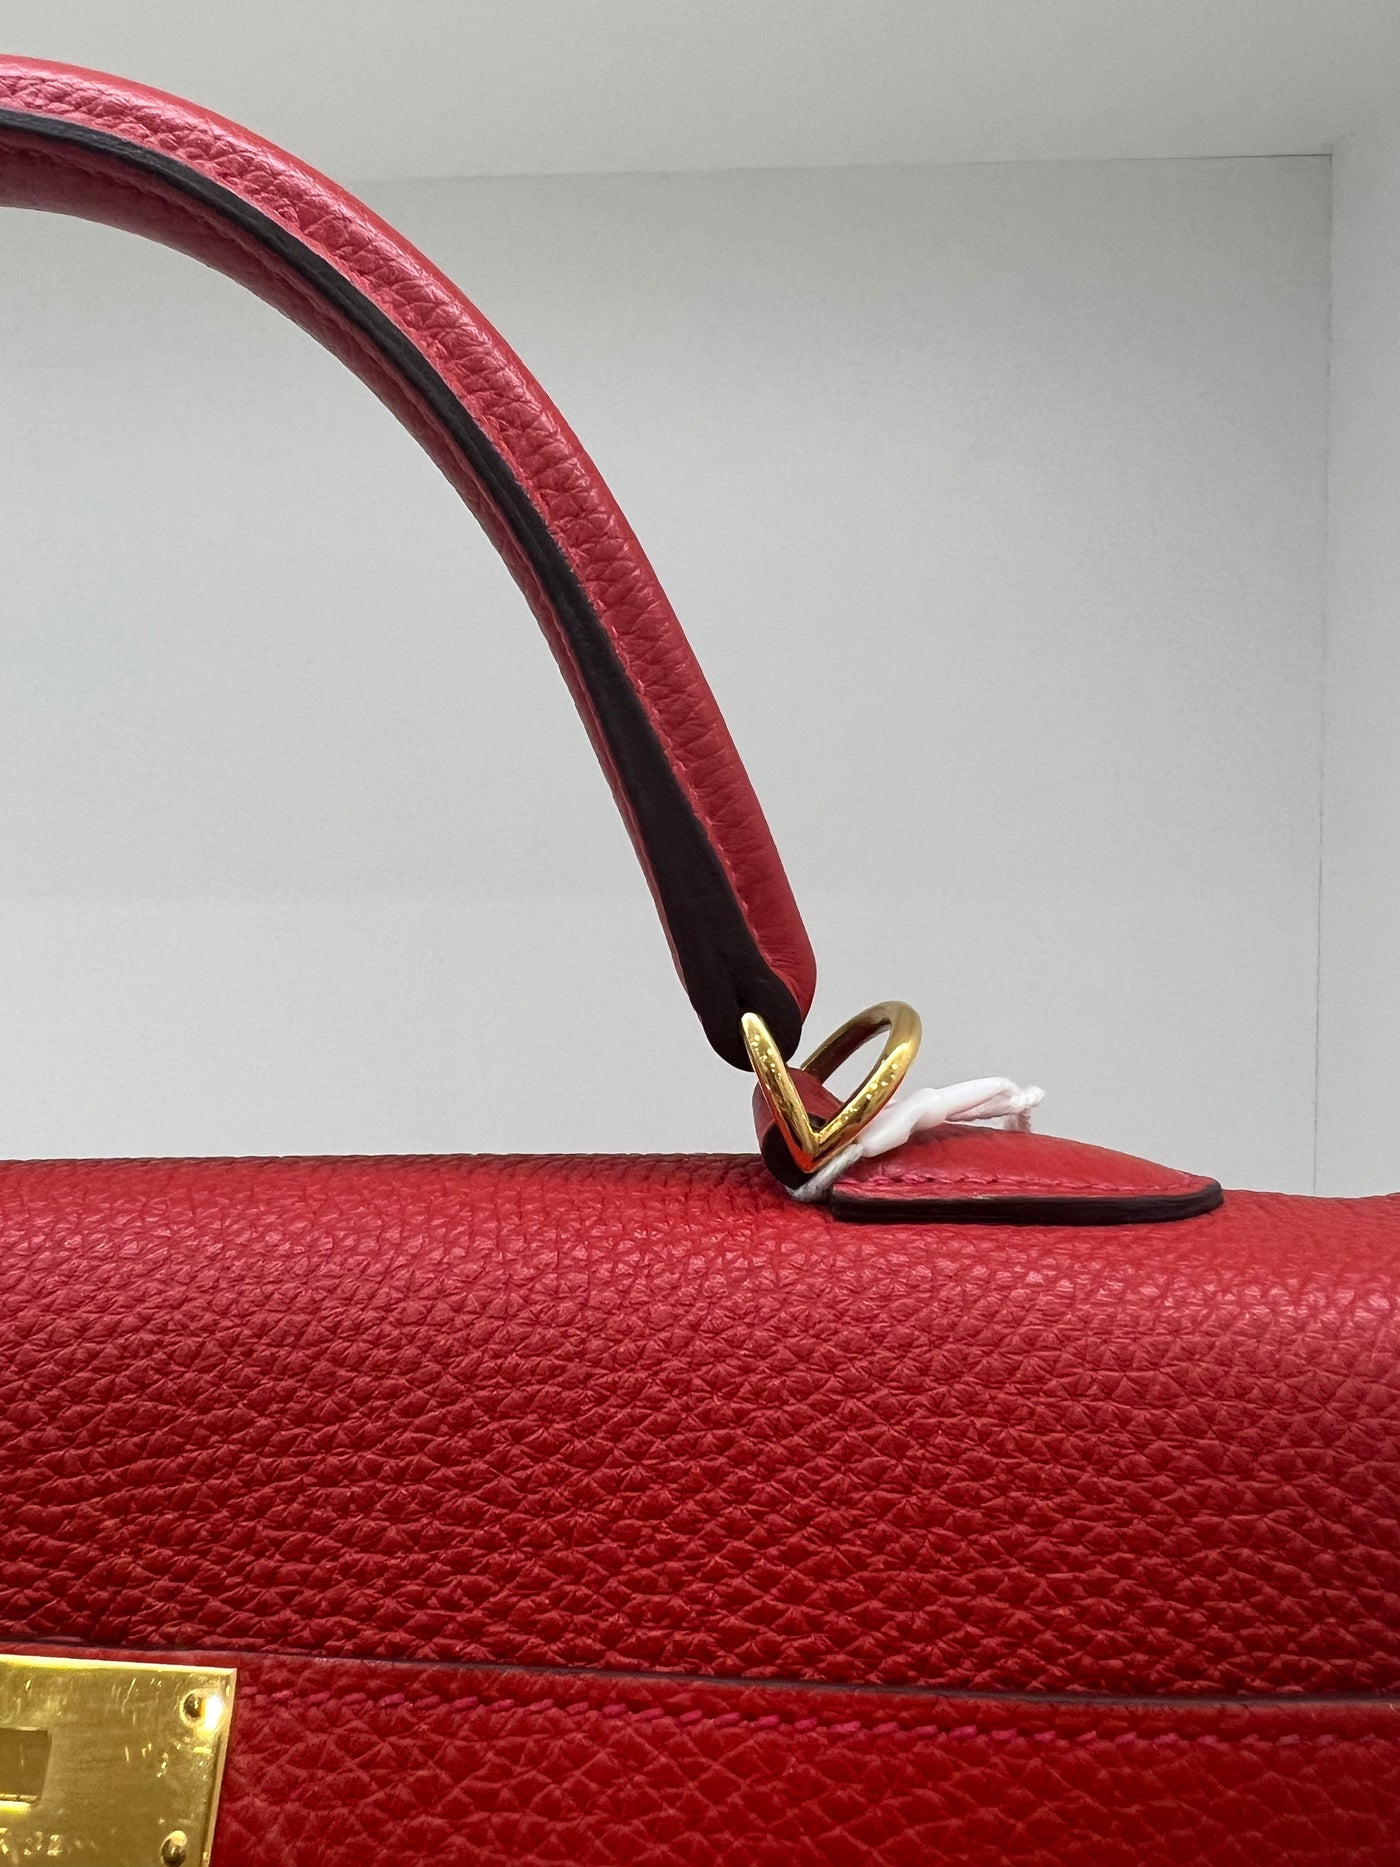 Hermès 32cm Kelly Capucine Bag GHW